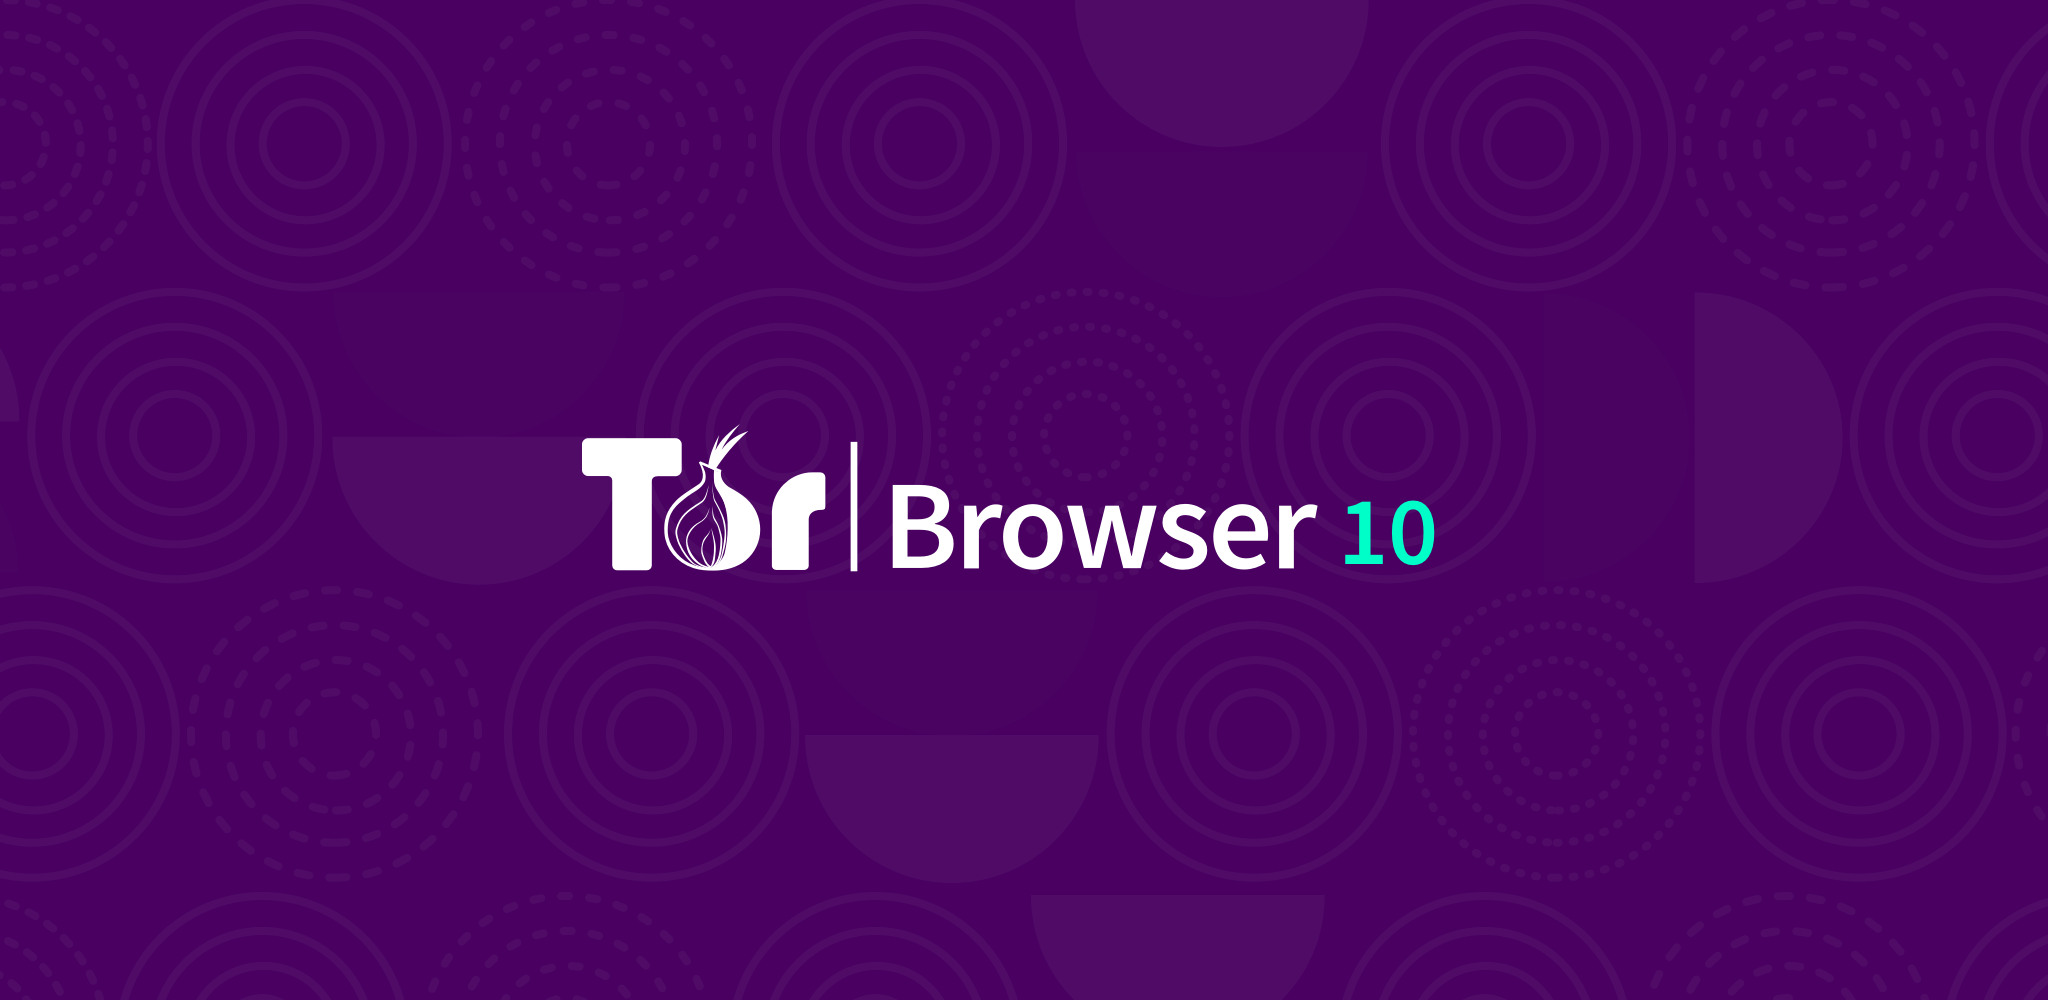 Tor browser первая версия mega википедия браузера тор mega вход